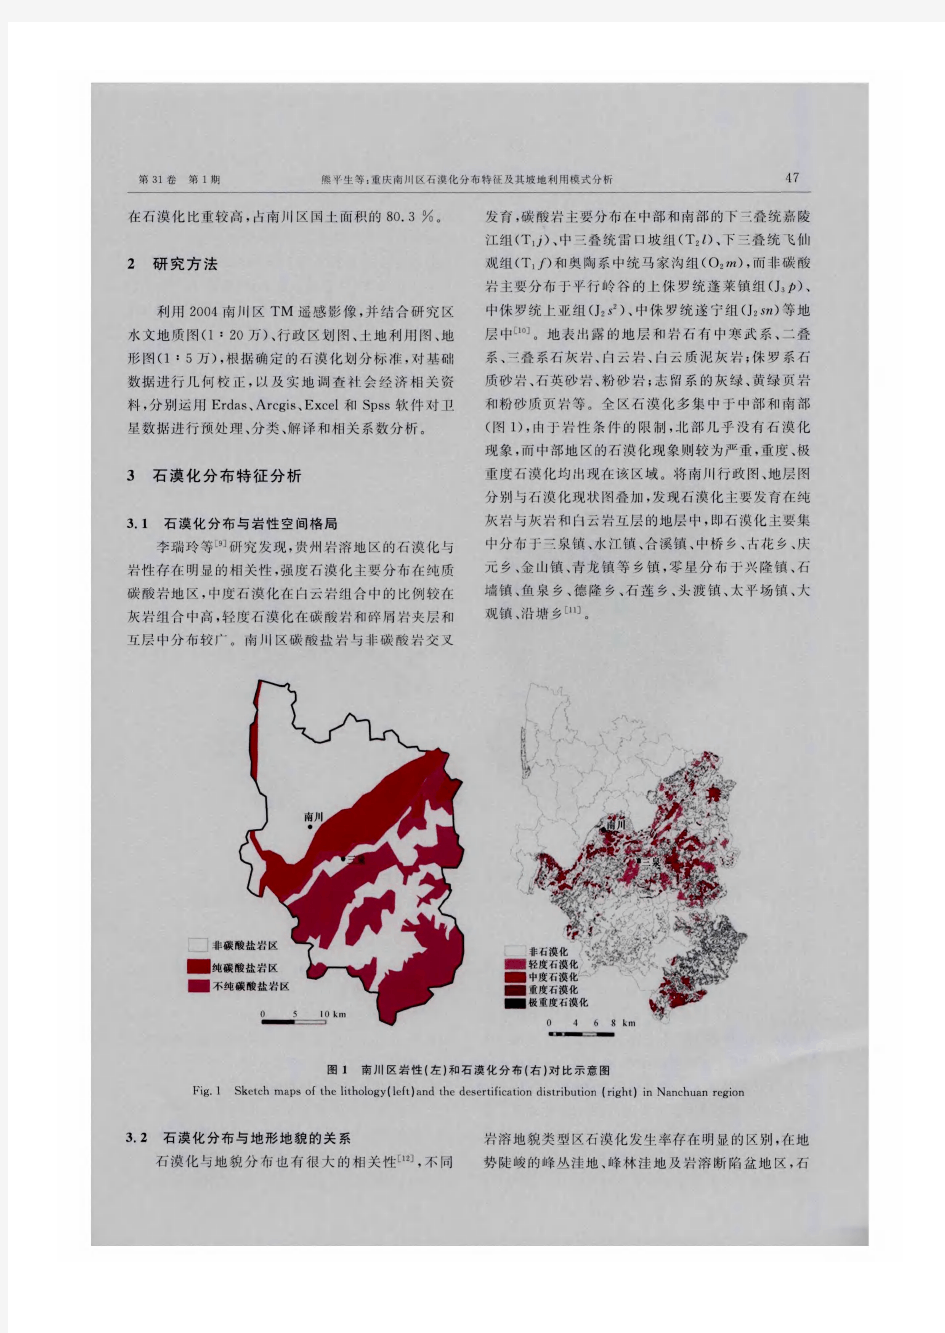 重庆南川区石漠化分布特征及其坡地利用模式分析